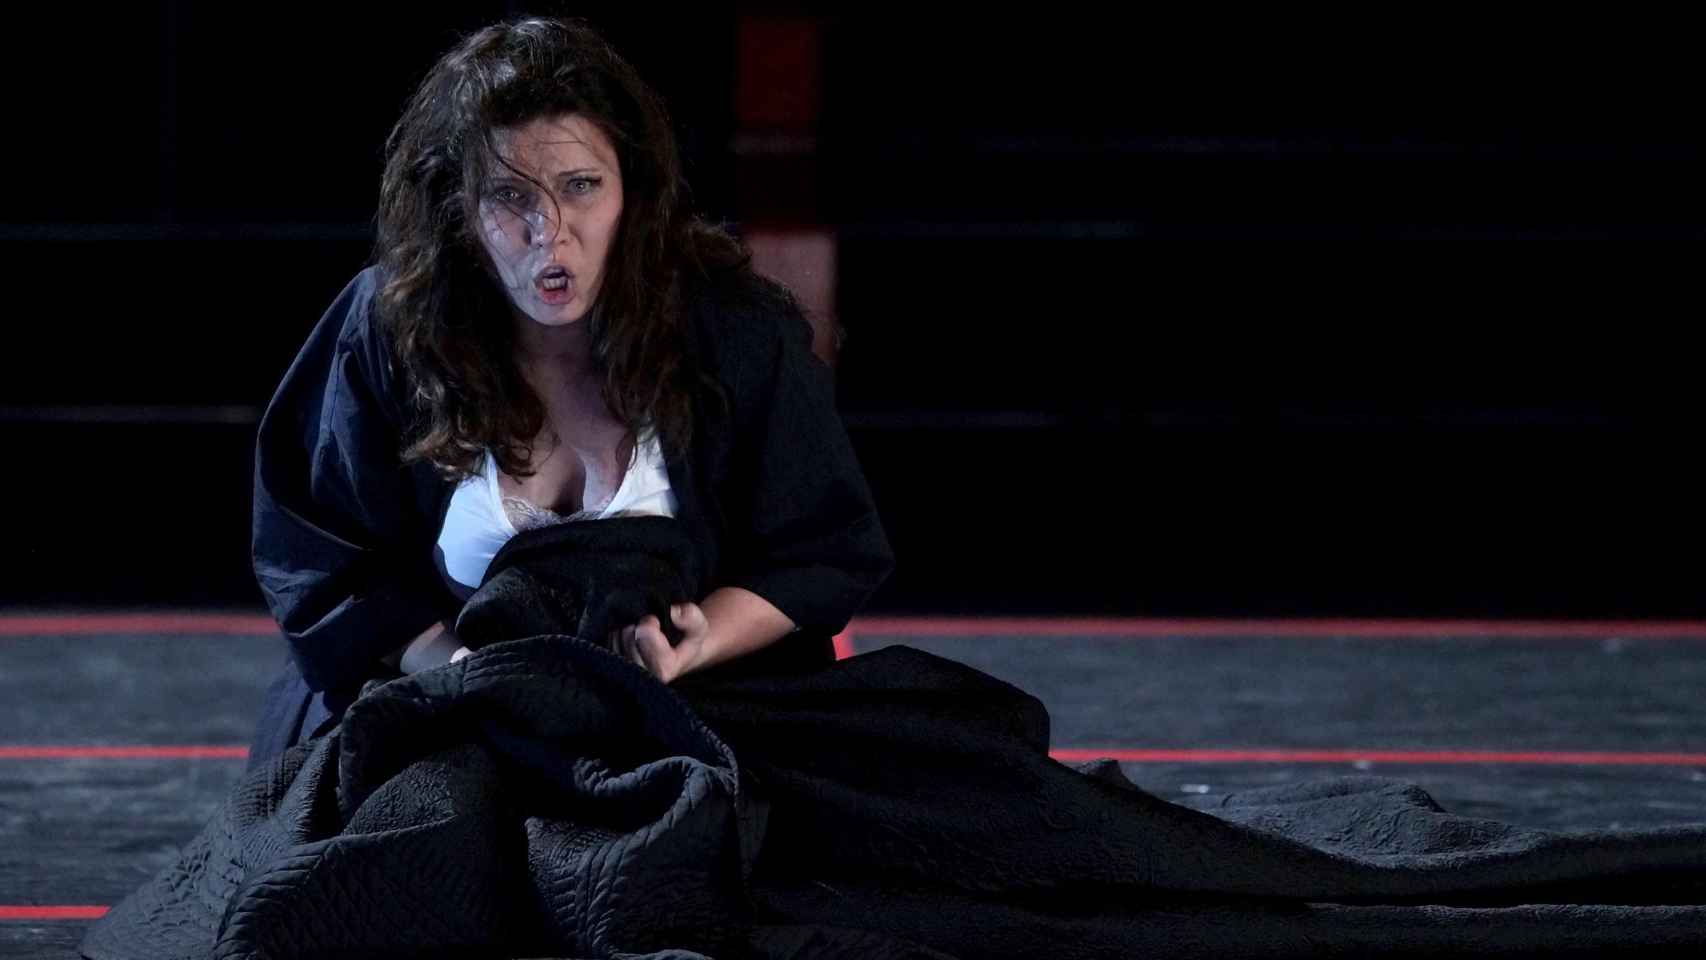 Marina Rebeka, durante su interpretación en 'La traviata'. Foto: Javier del Real